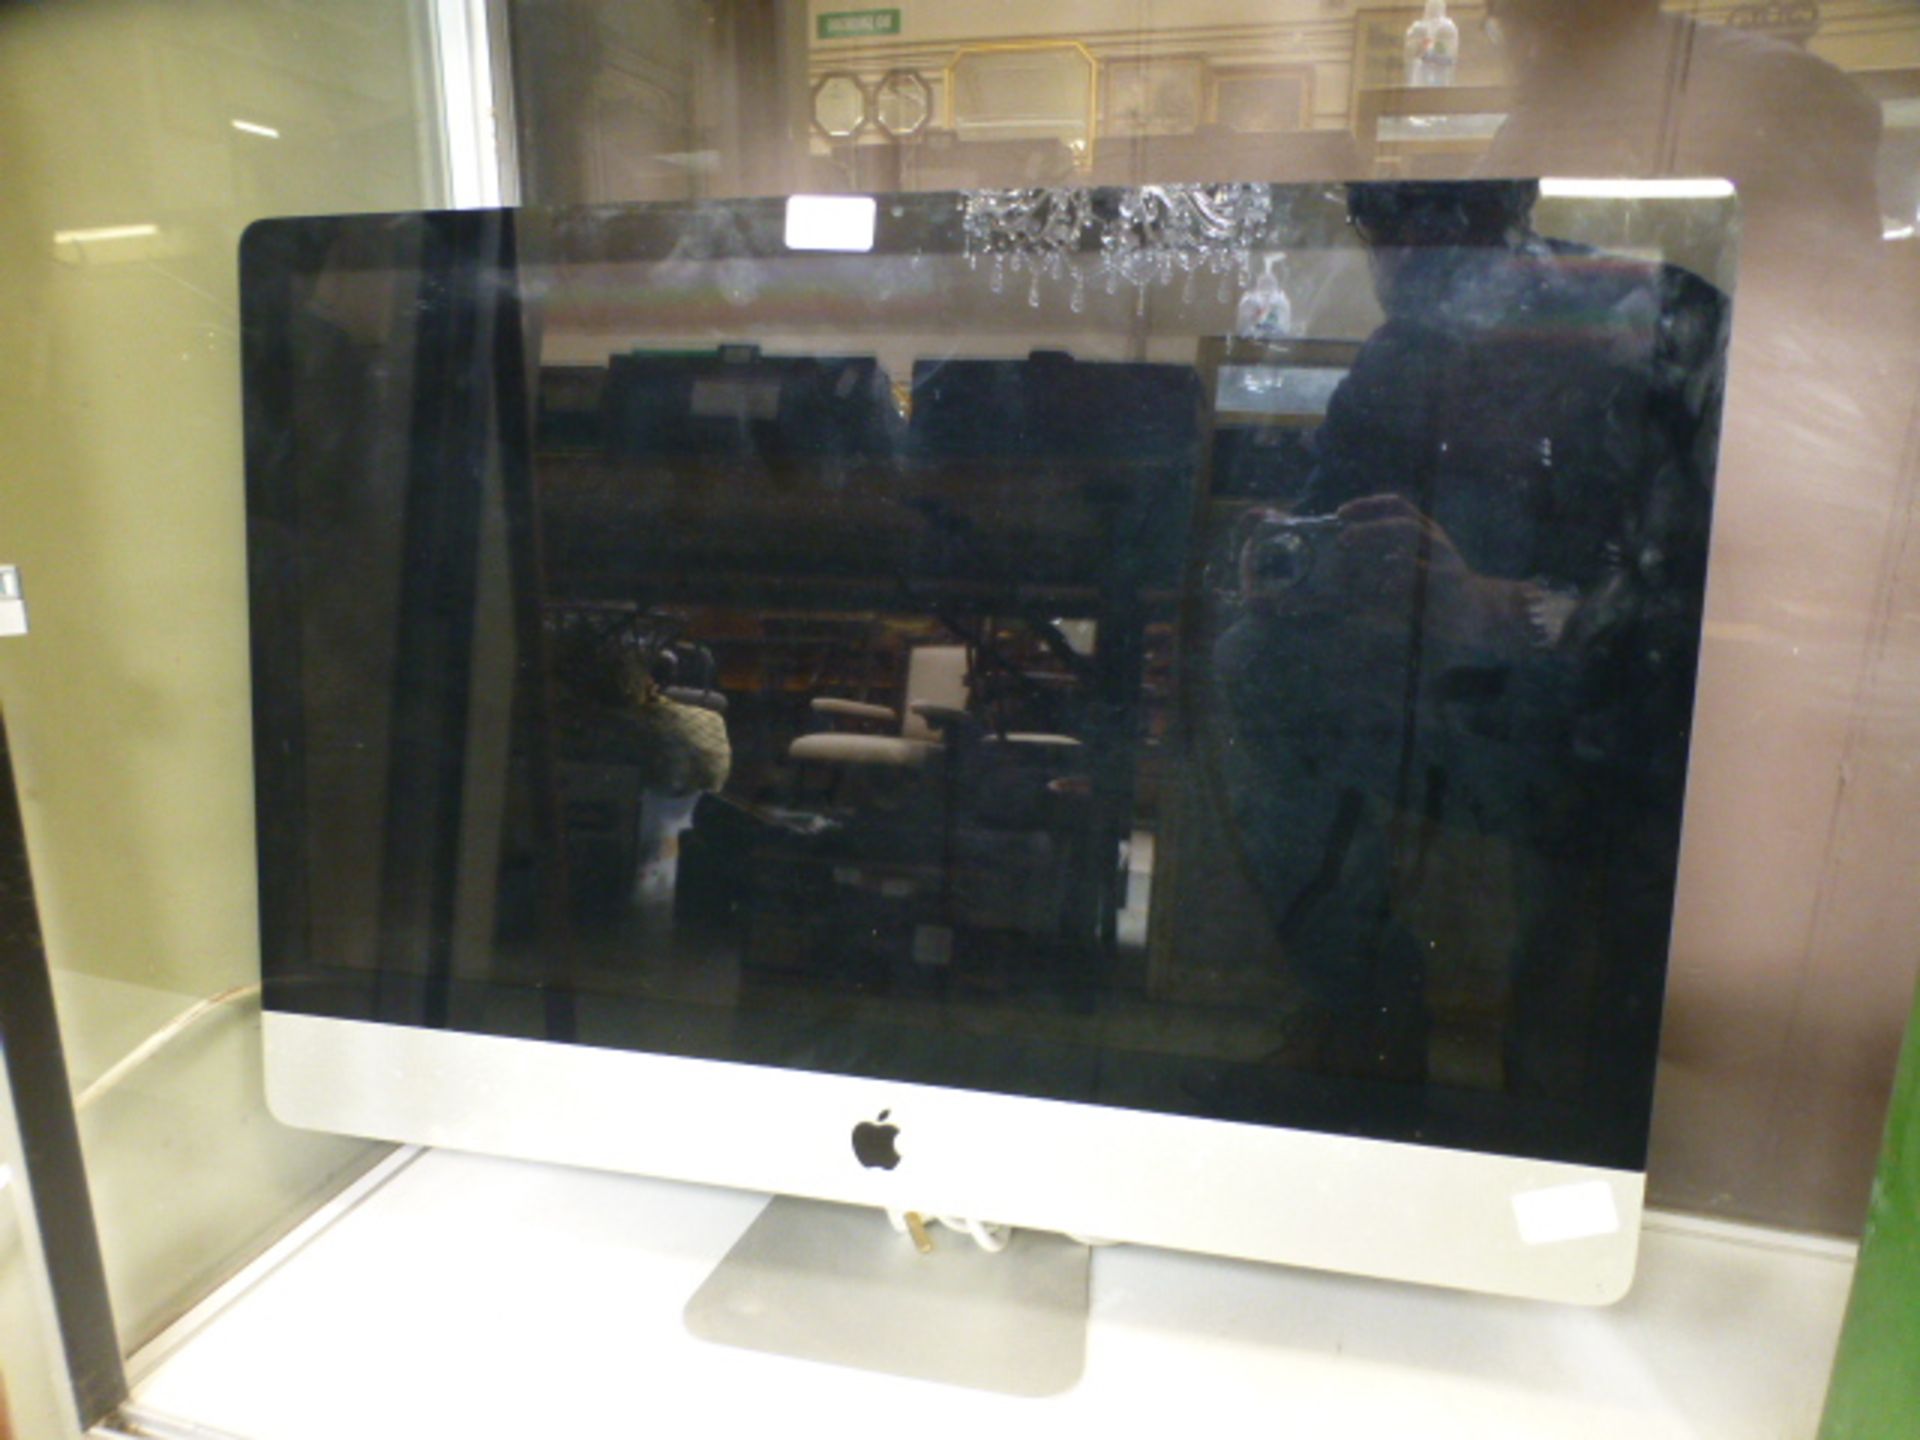 An Apple Mac computer